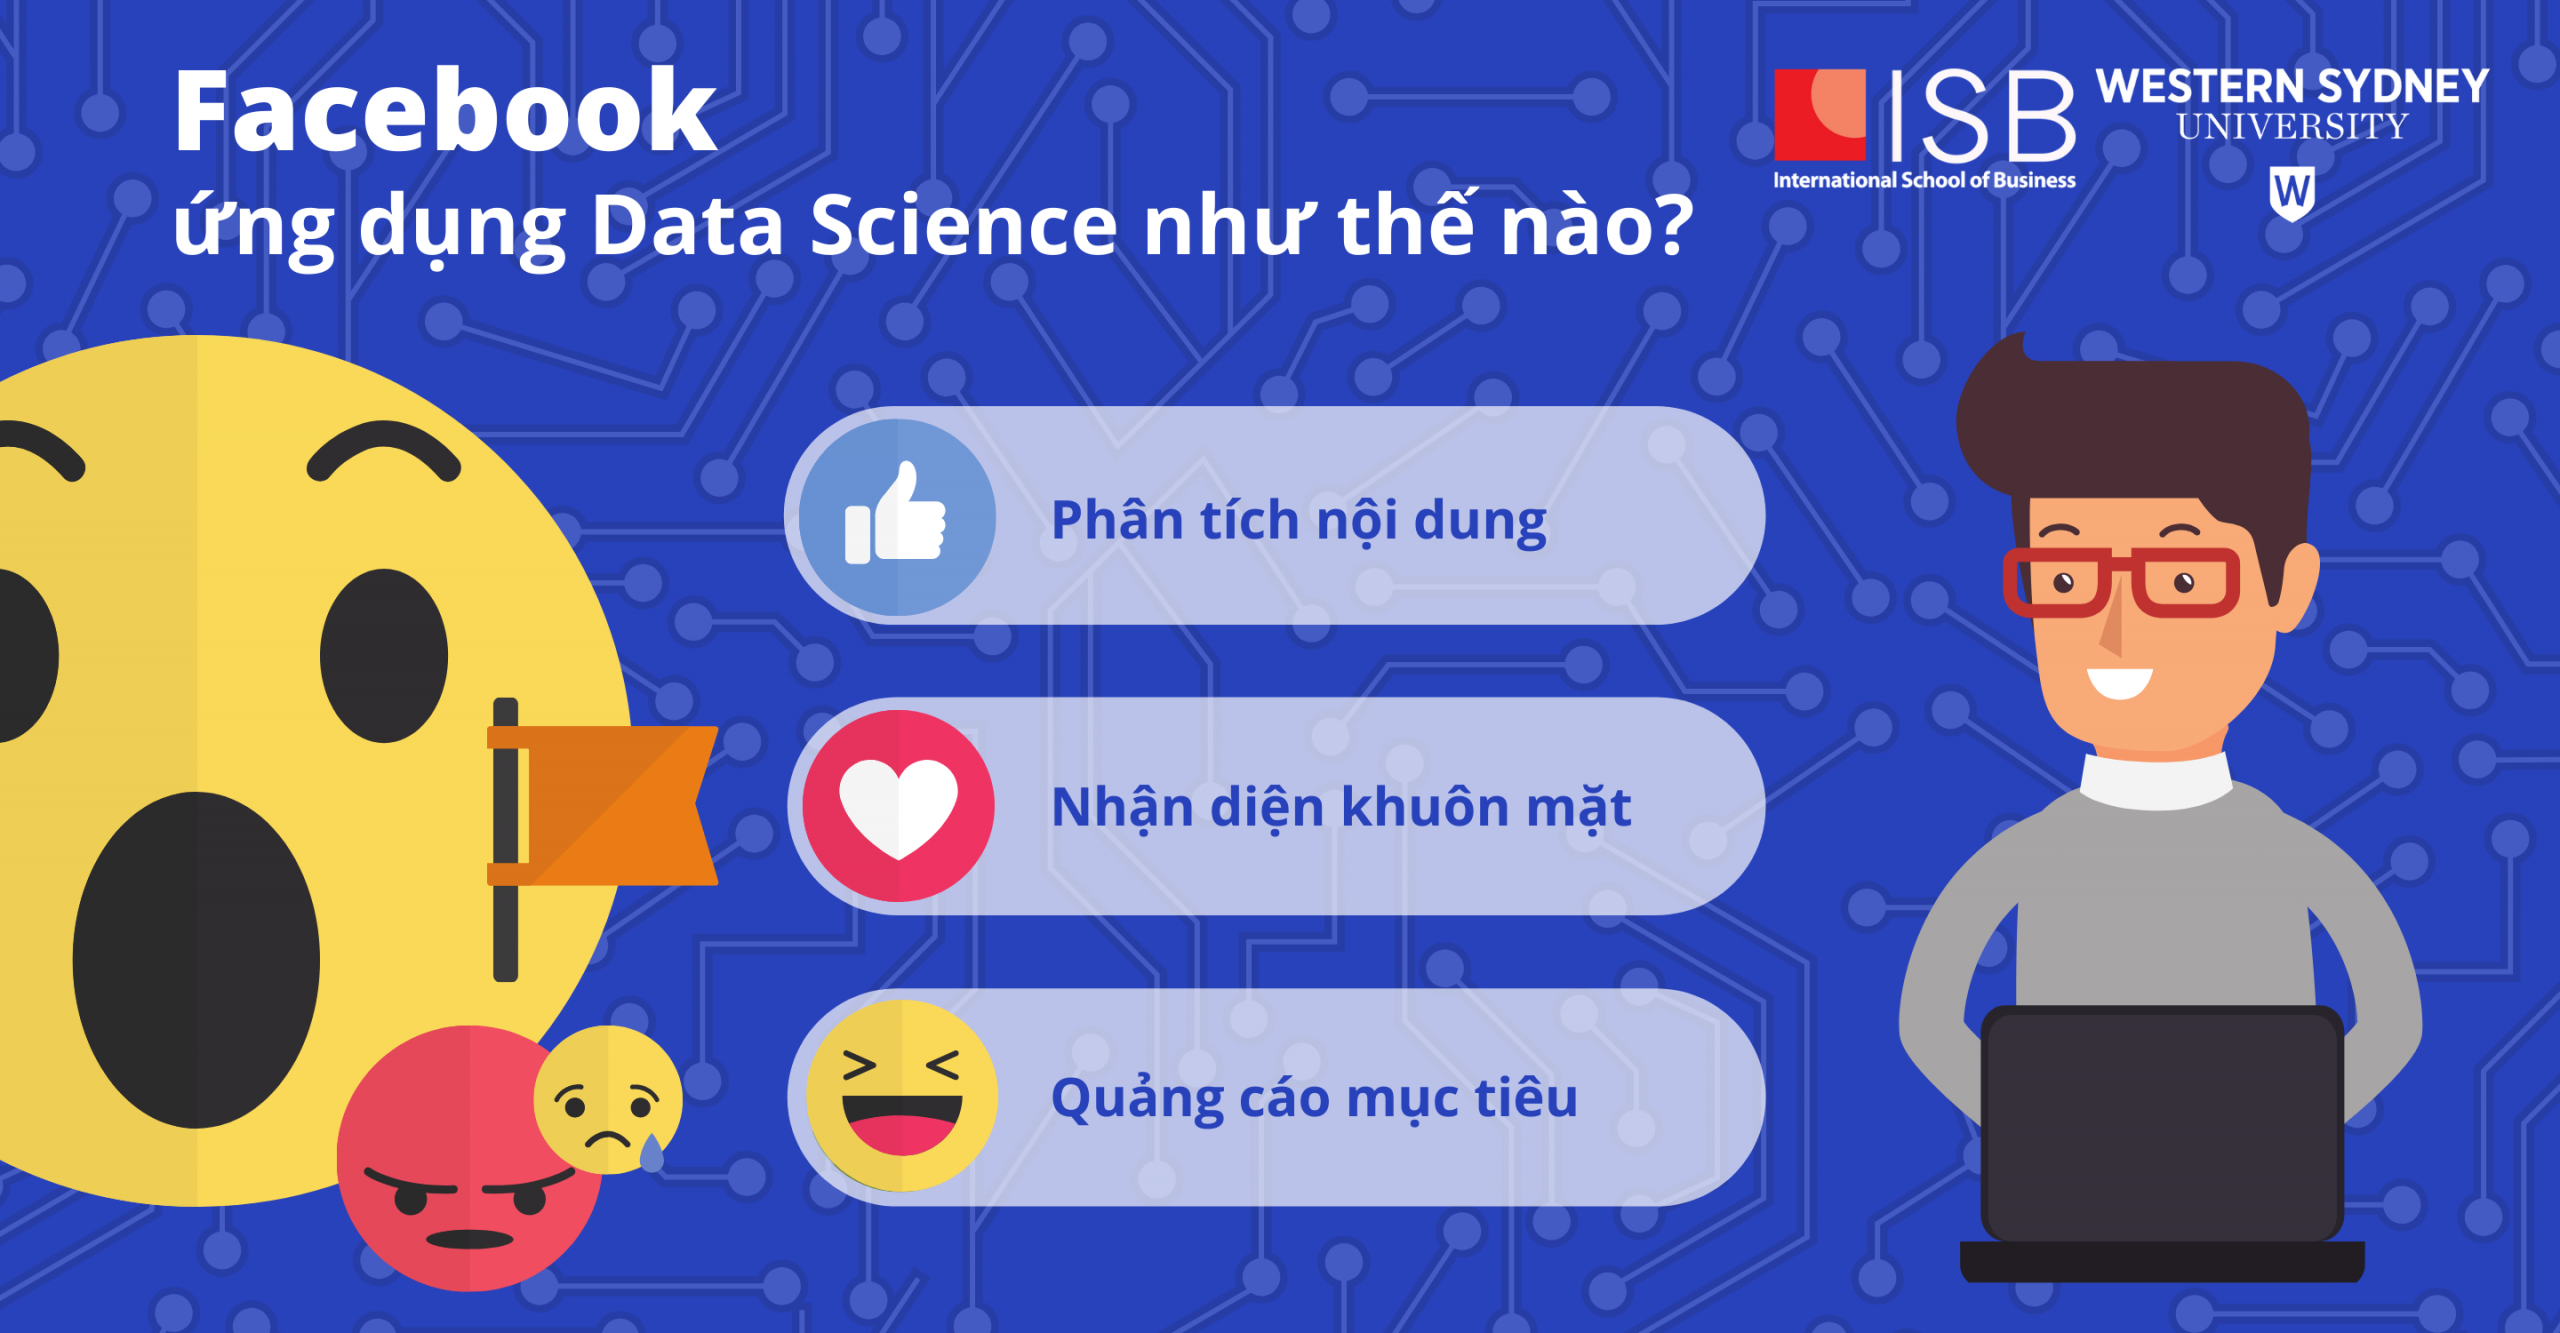 VienISB_Facebook-ung-dung-data-science-1